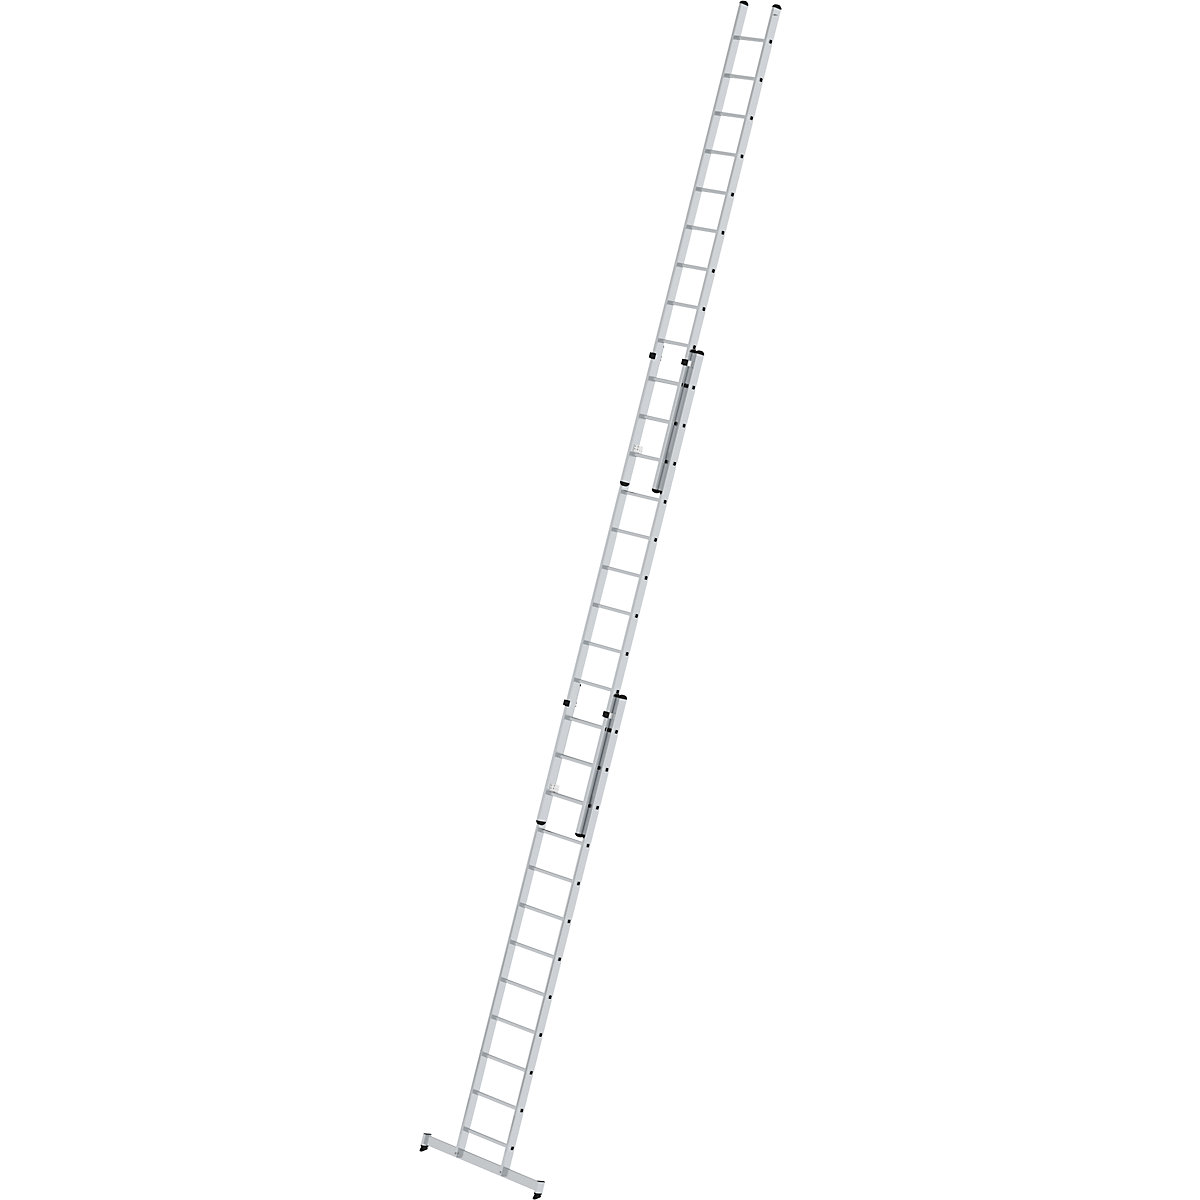 Escalera de mano de altura regulable – MUNK, escalera extensible, de 3 tramos con traviesa nivello®, 3 x 12 peldaños-7